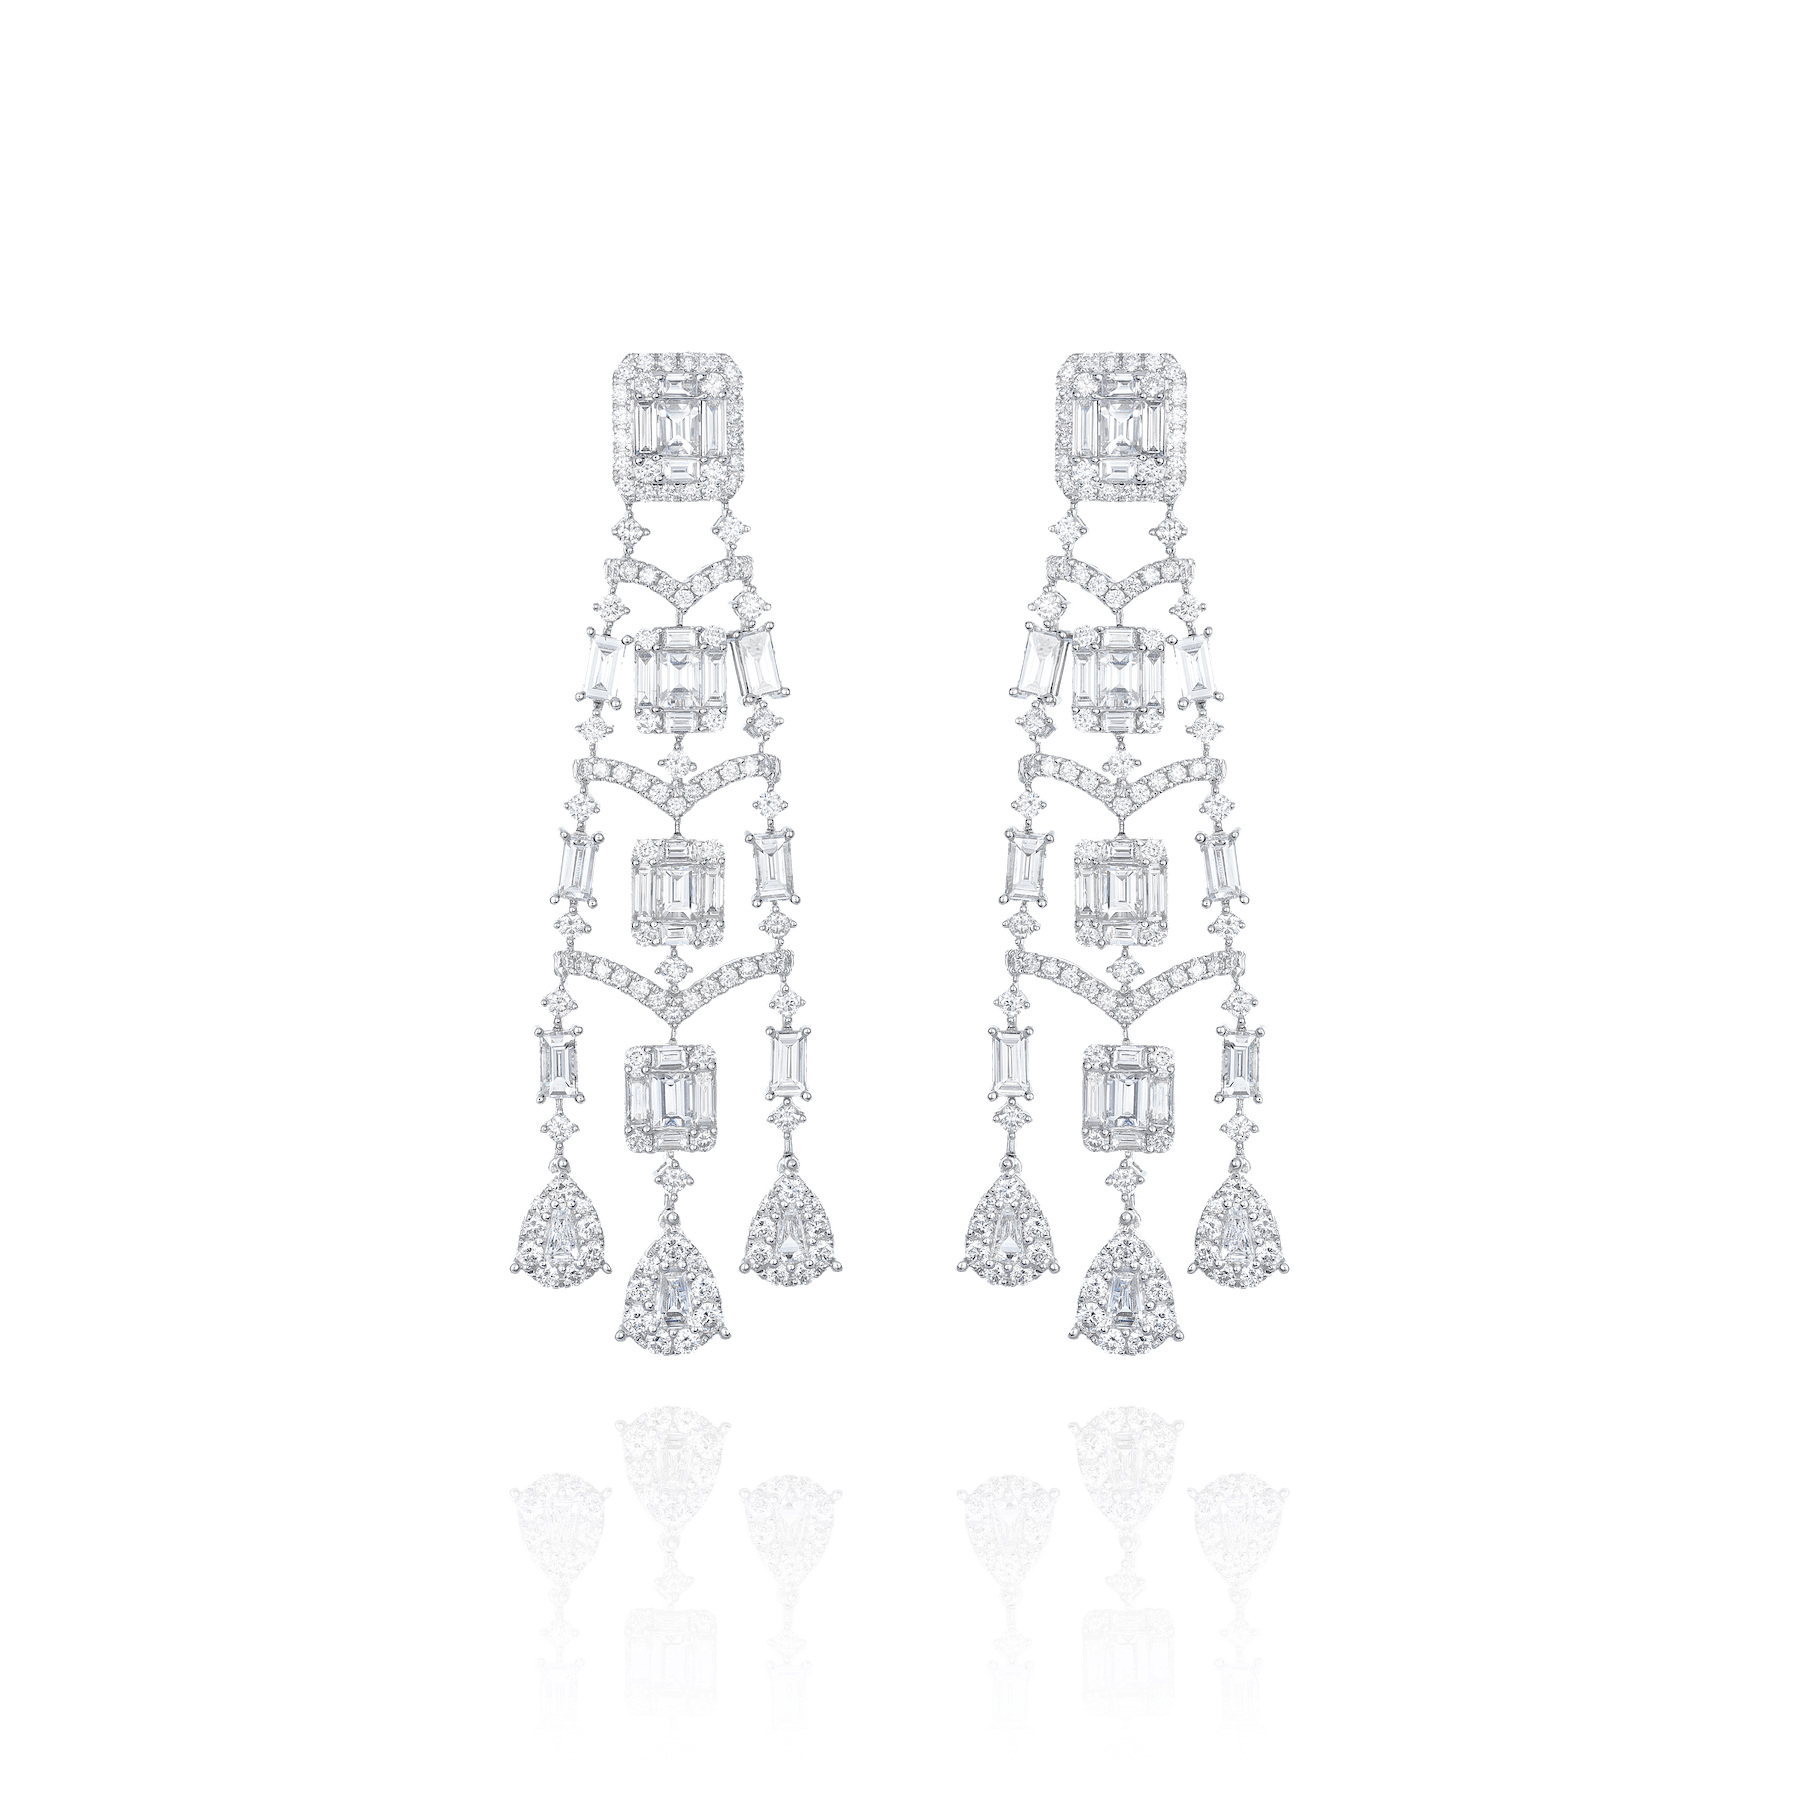 Obelisk Chandelier Earrings